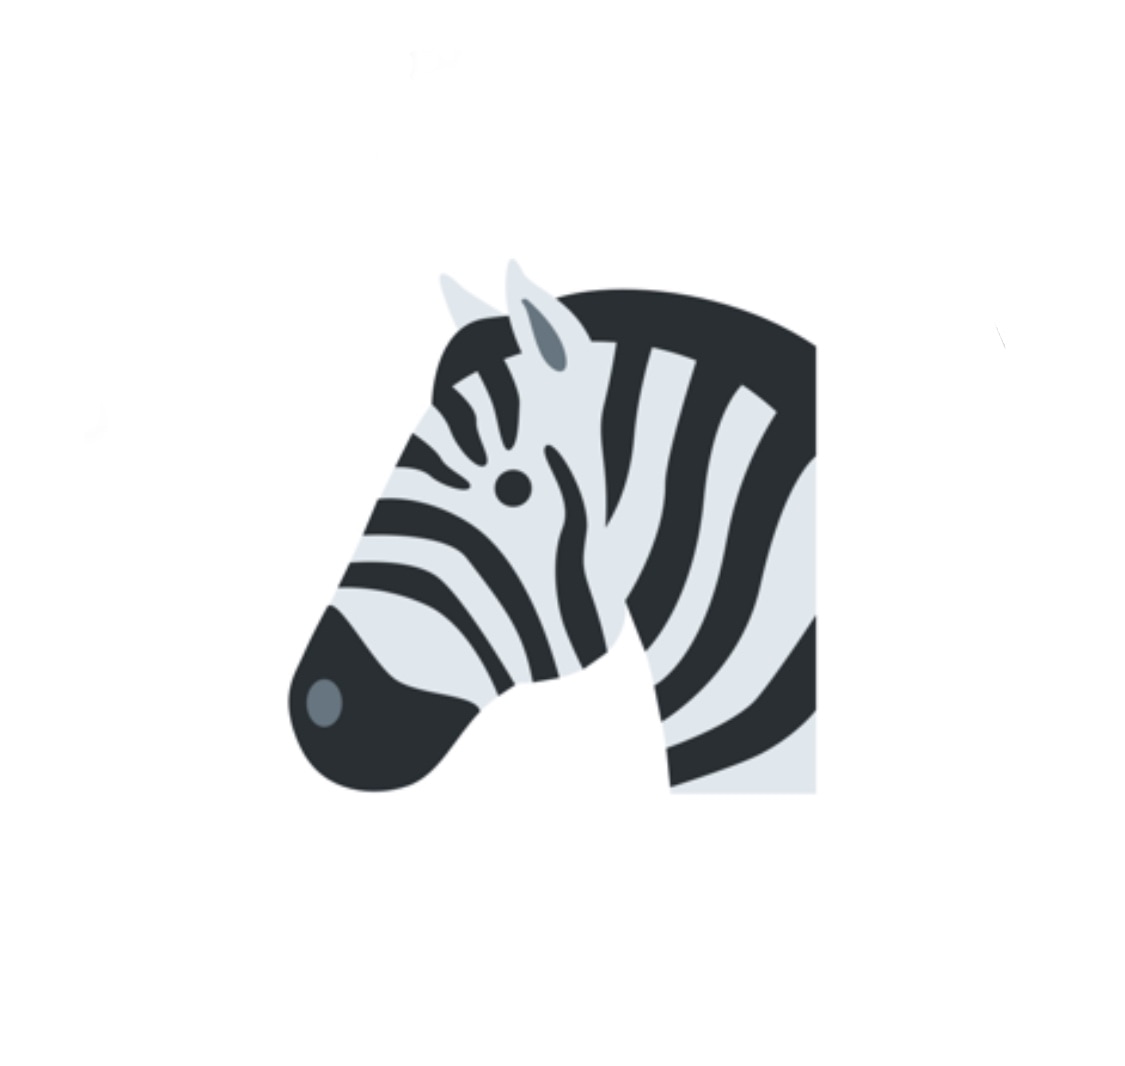 Zebra v1.0.7 исправляет повреждения, сортируя репозитории по алфавиту 2